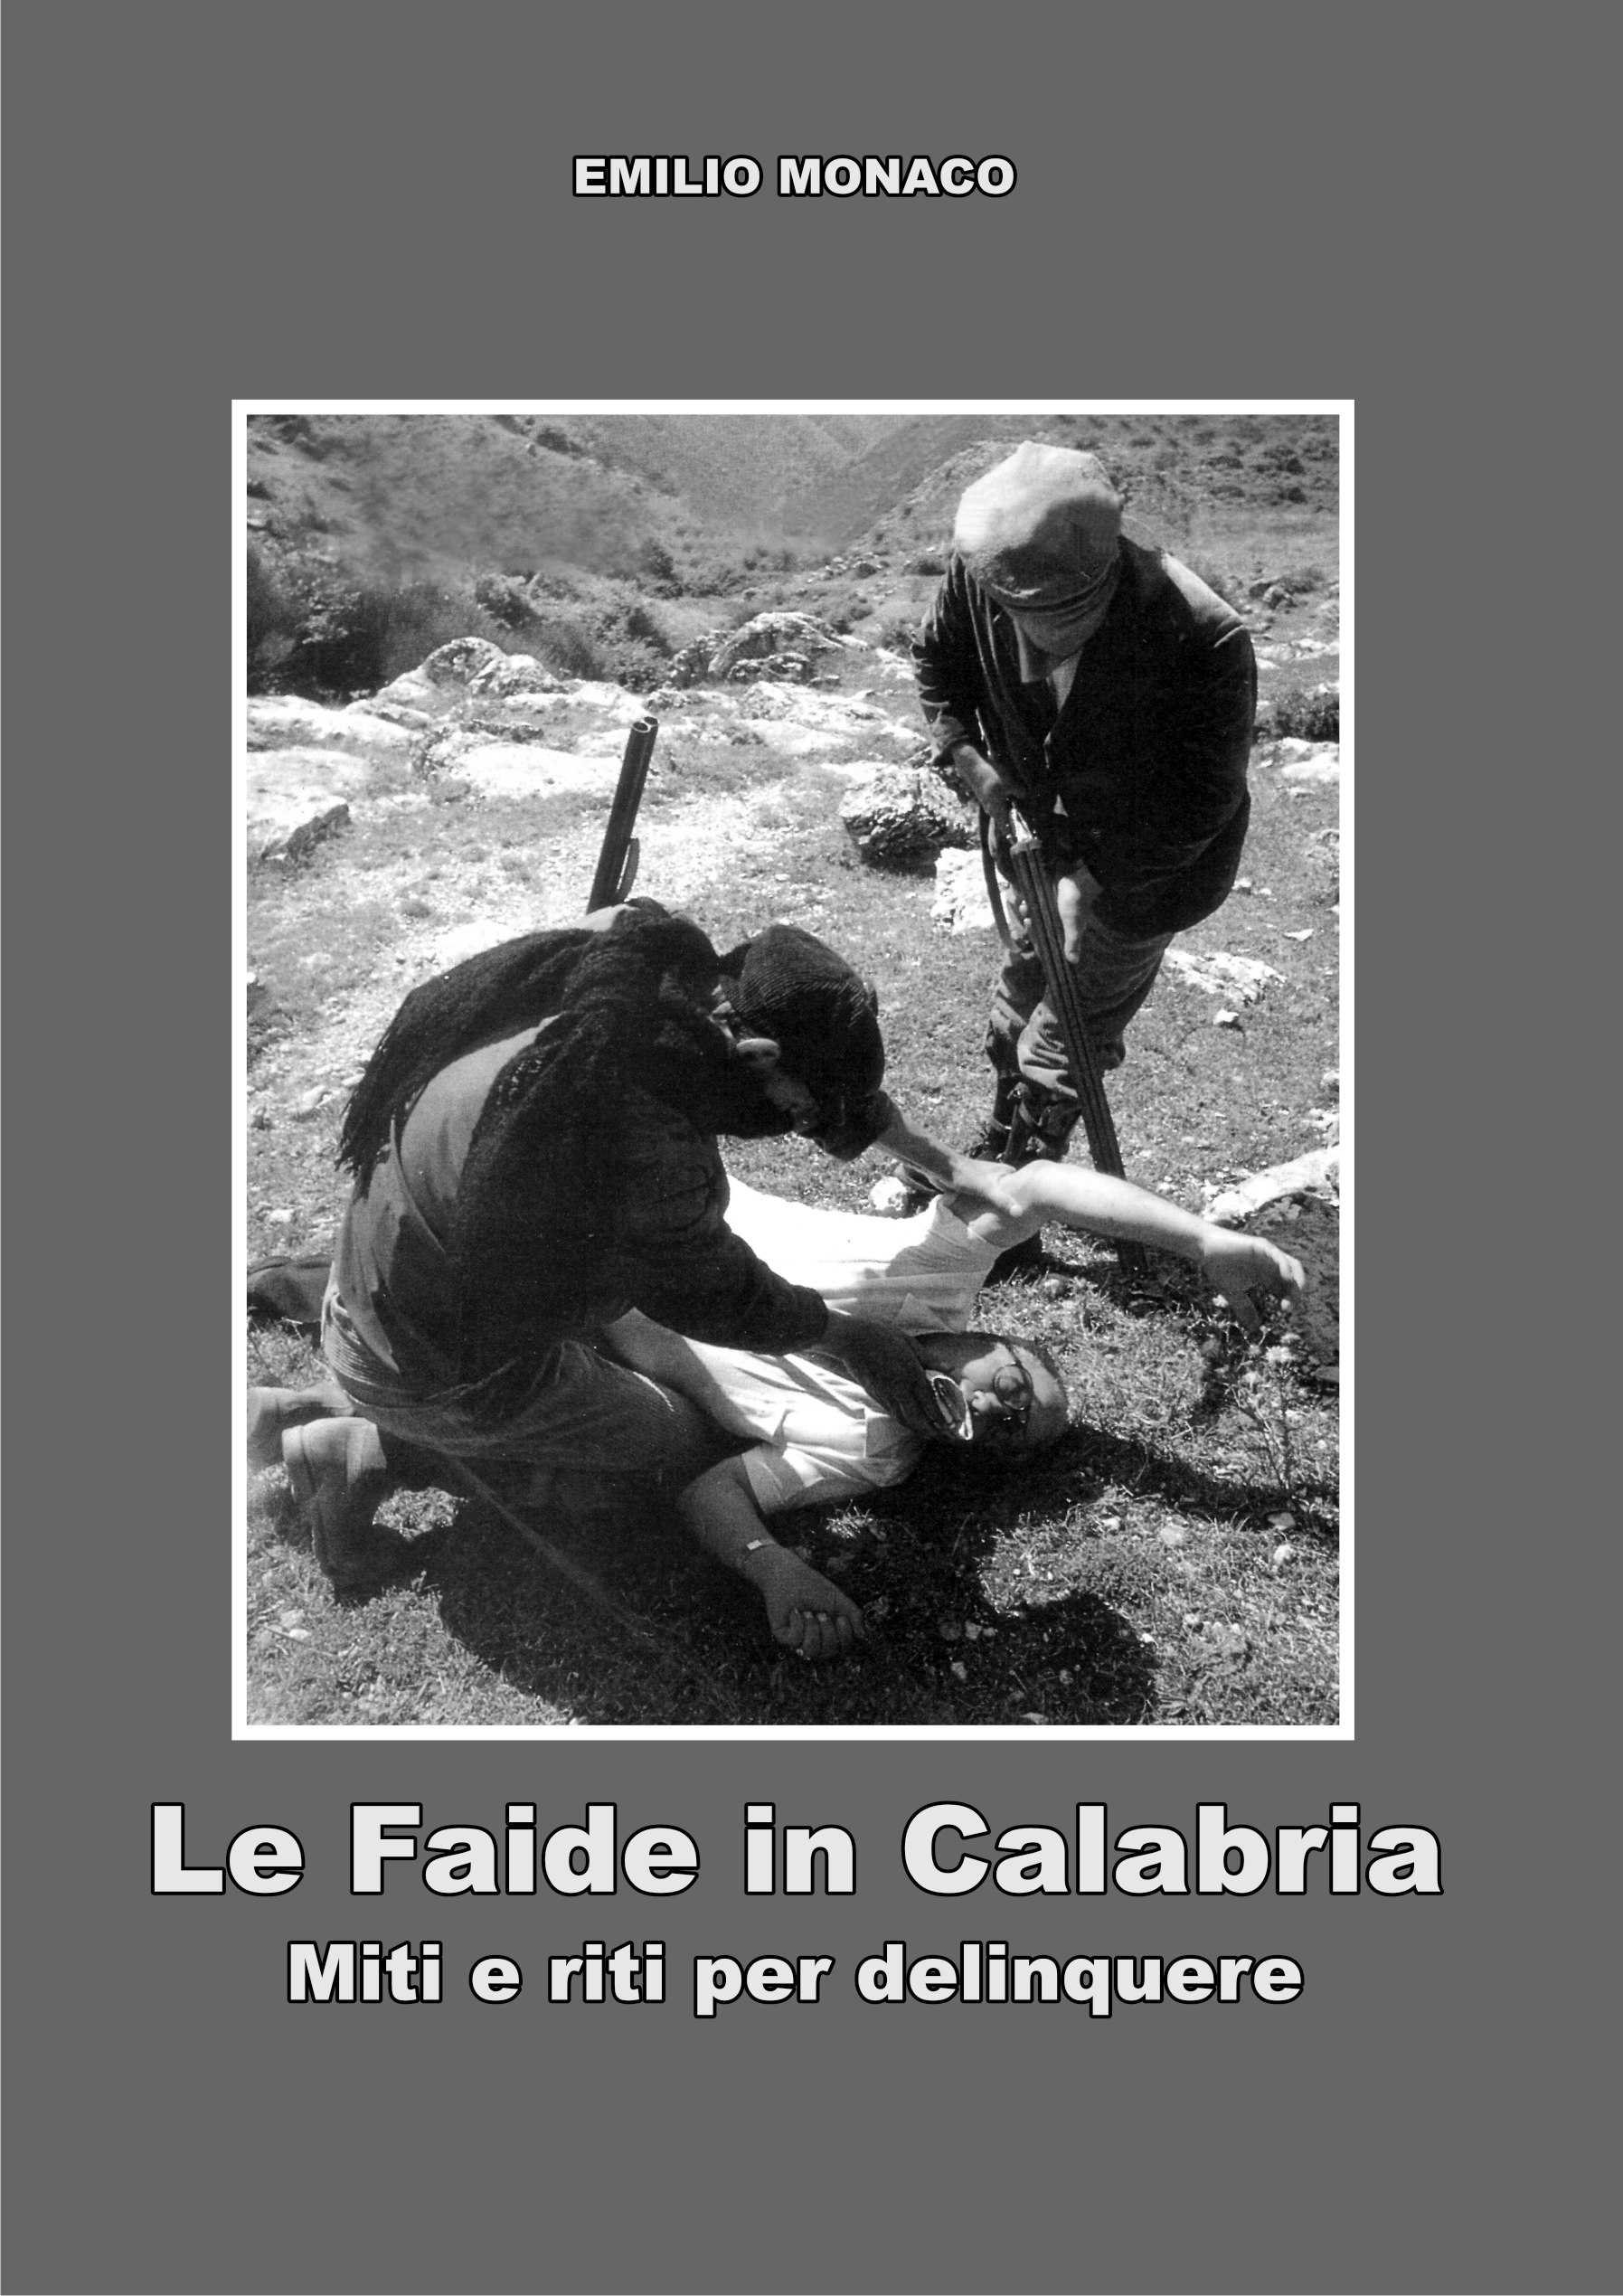 Presentazione del libro "Le faide in Calabria - Miti e riti per delinquere"